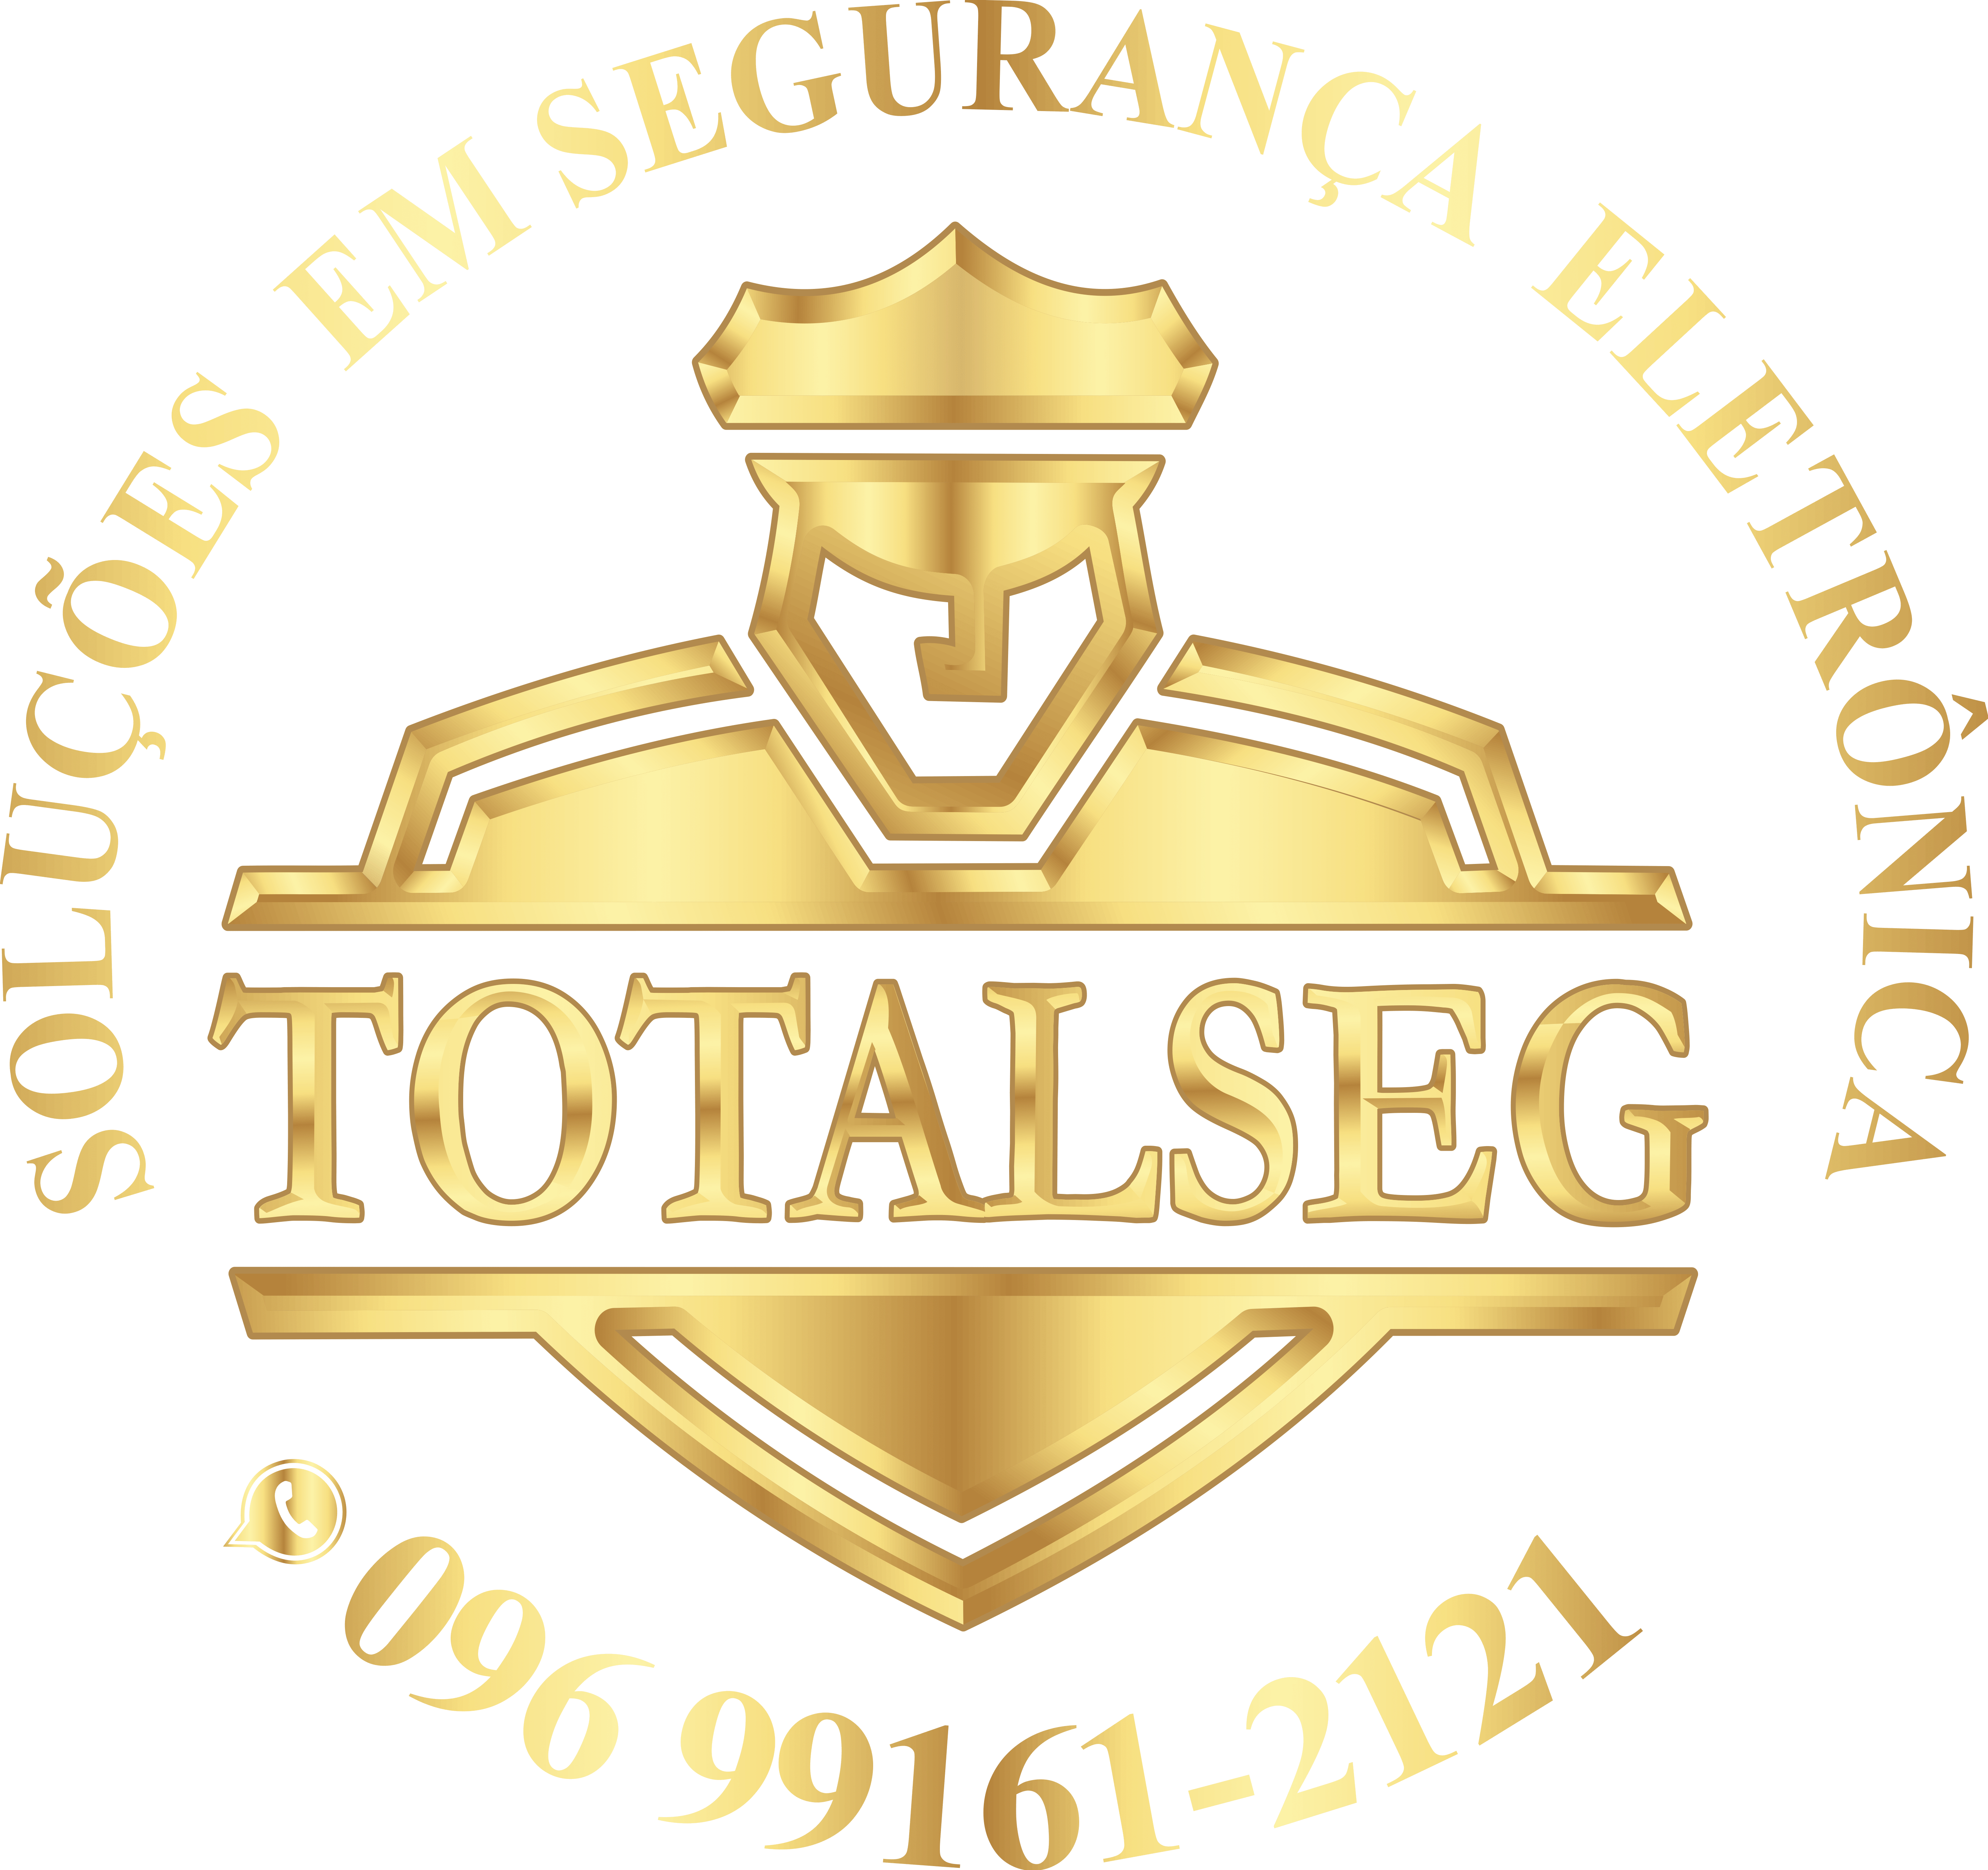 Totalseg Comércio e Serviços Ltda